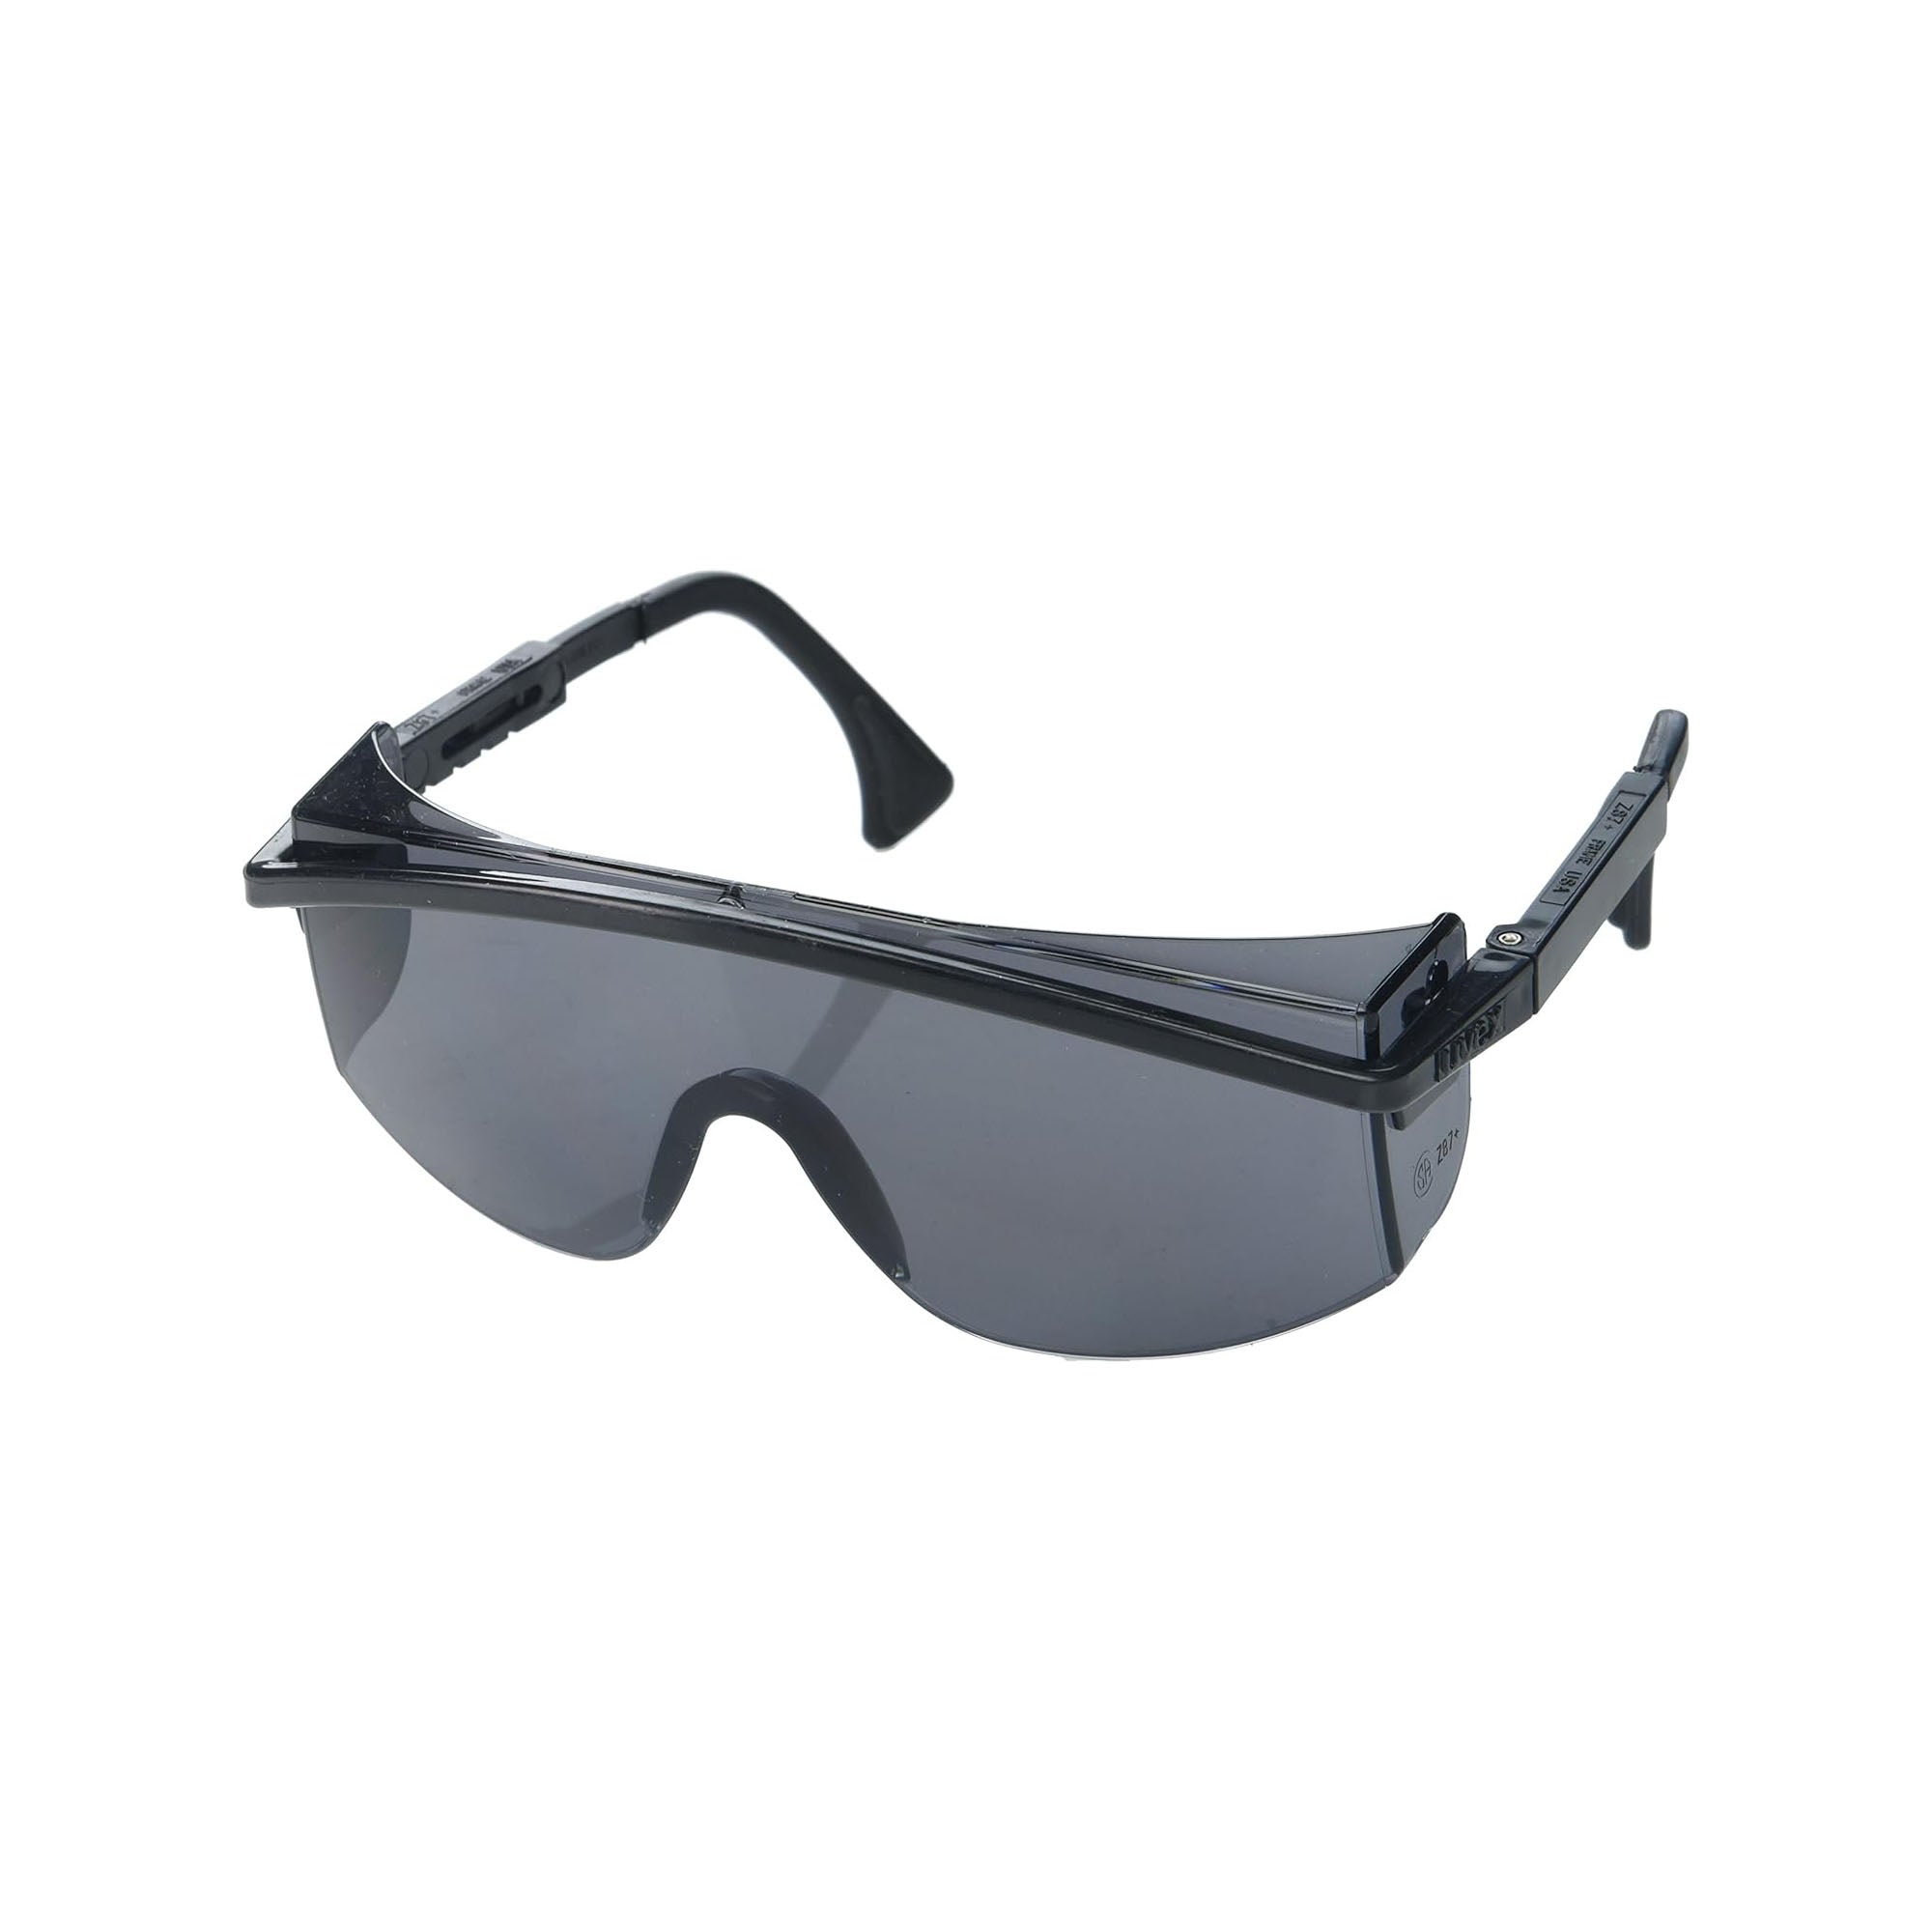 Uvex, Astrospec 3000 Safety Eyewear, Black Frame, Gray